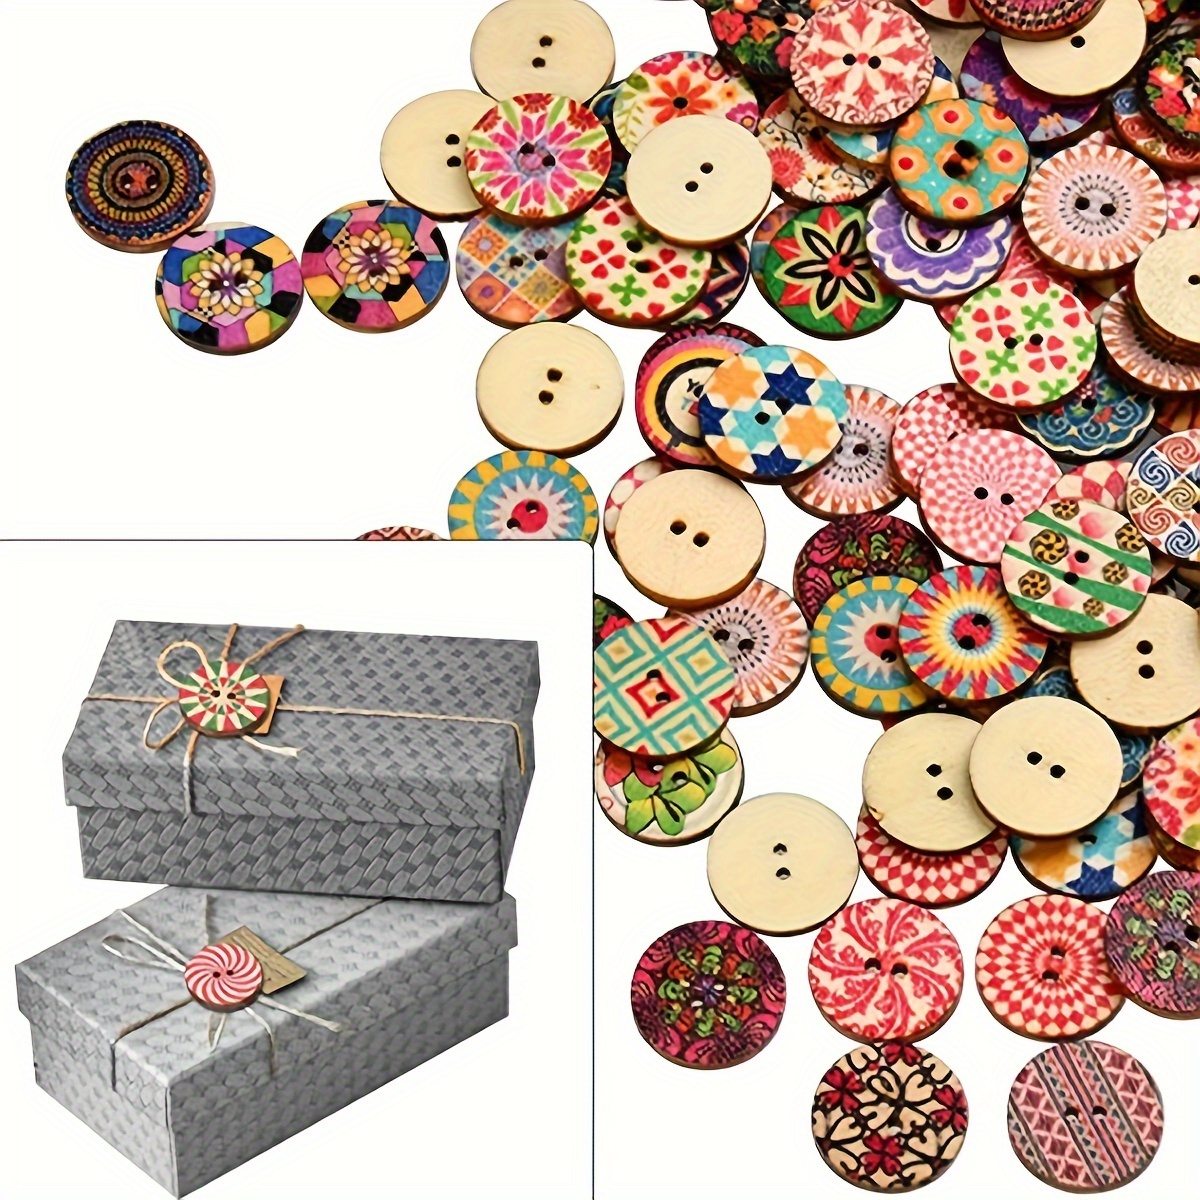 Botones en forma de corazón – 100 piezas de madera de 63.701 in coloridos 2  agujeros mezclados botones decorativos para bricolaje costura y artesanía